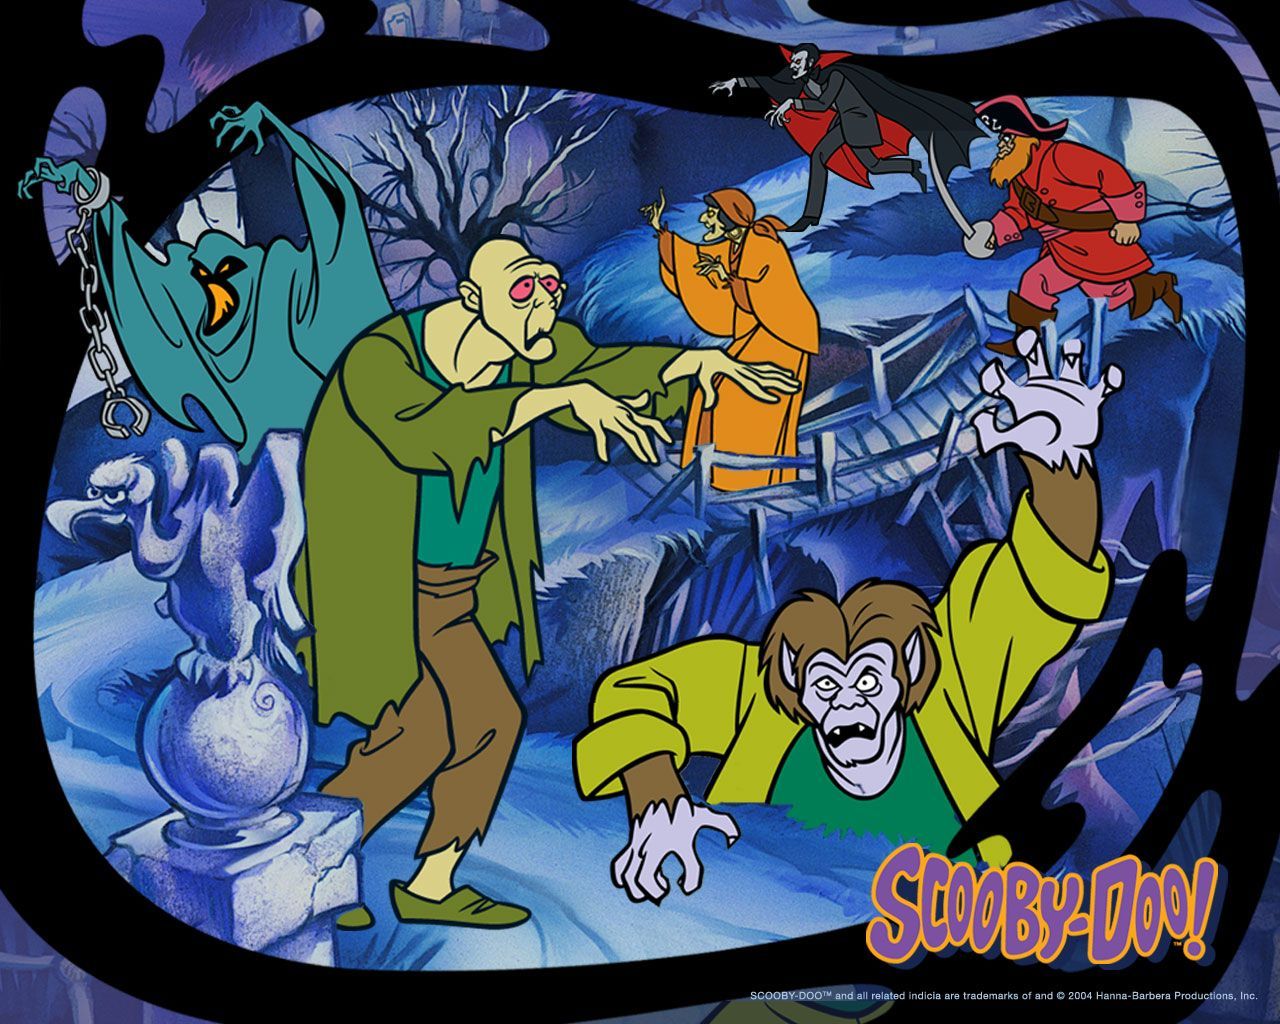 Scooby doo Wallpaper: Scooby Doo wallpaper. Scooby doo image, Scooby doo movie, Scooby doo